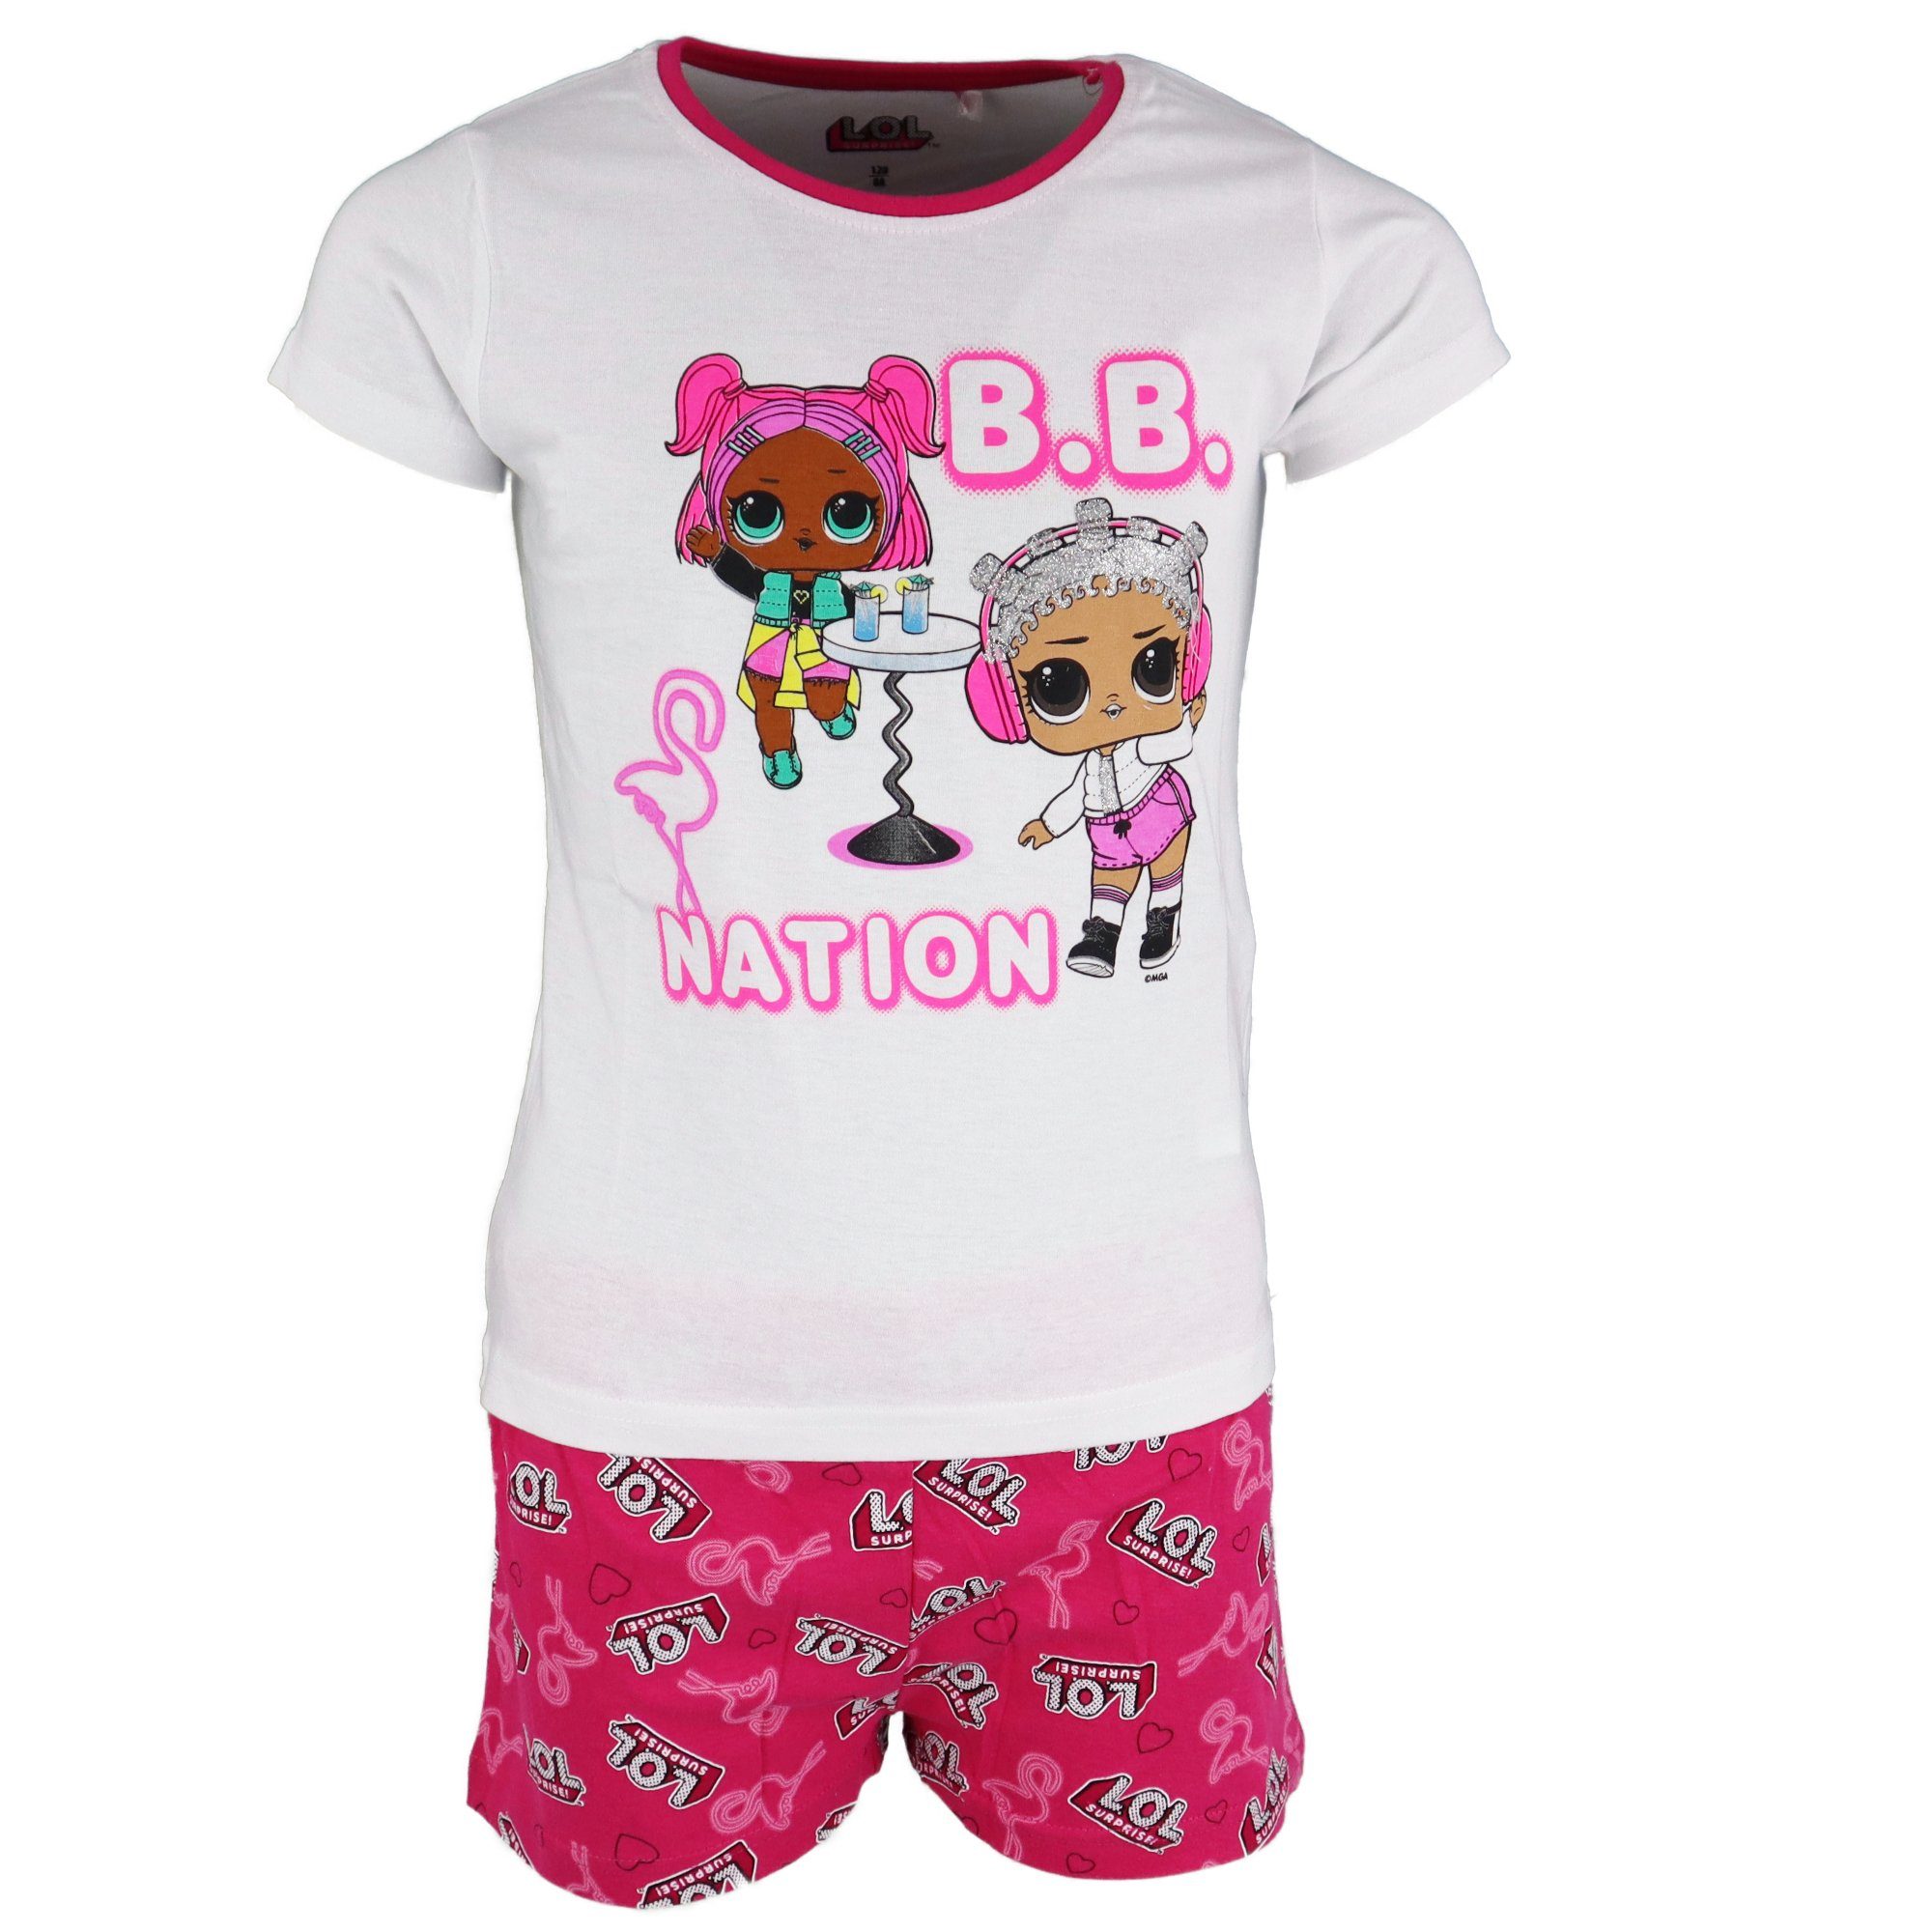 L.O.L. SURPRISE! Schlafanzug LOL Surprise B.B. Girls Mädchen Kinder kurzarm Pyjama Gr. 104 bis 134, 100% Baumwolle Pink